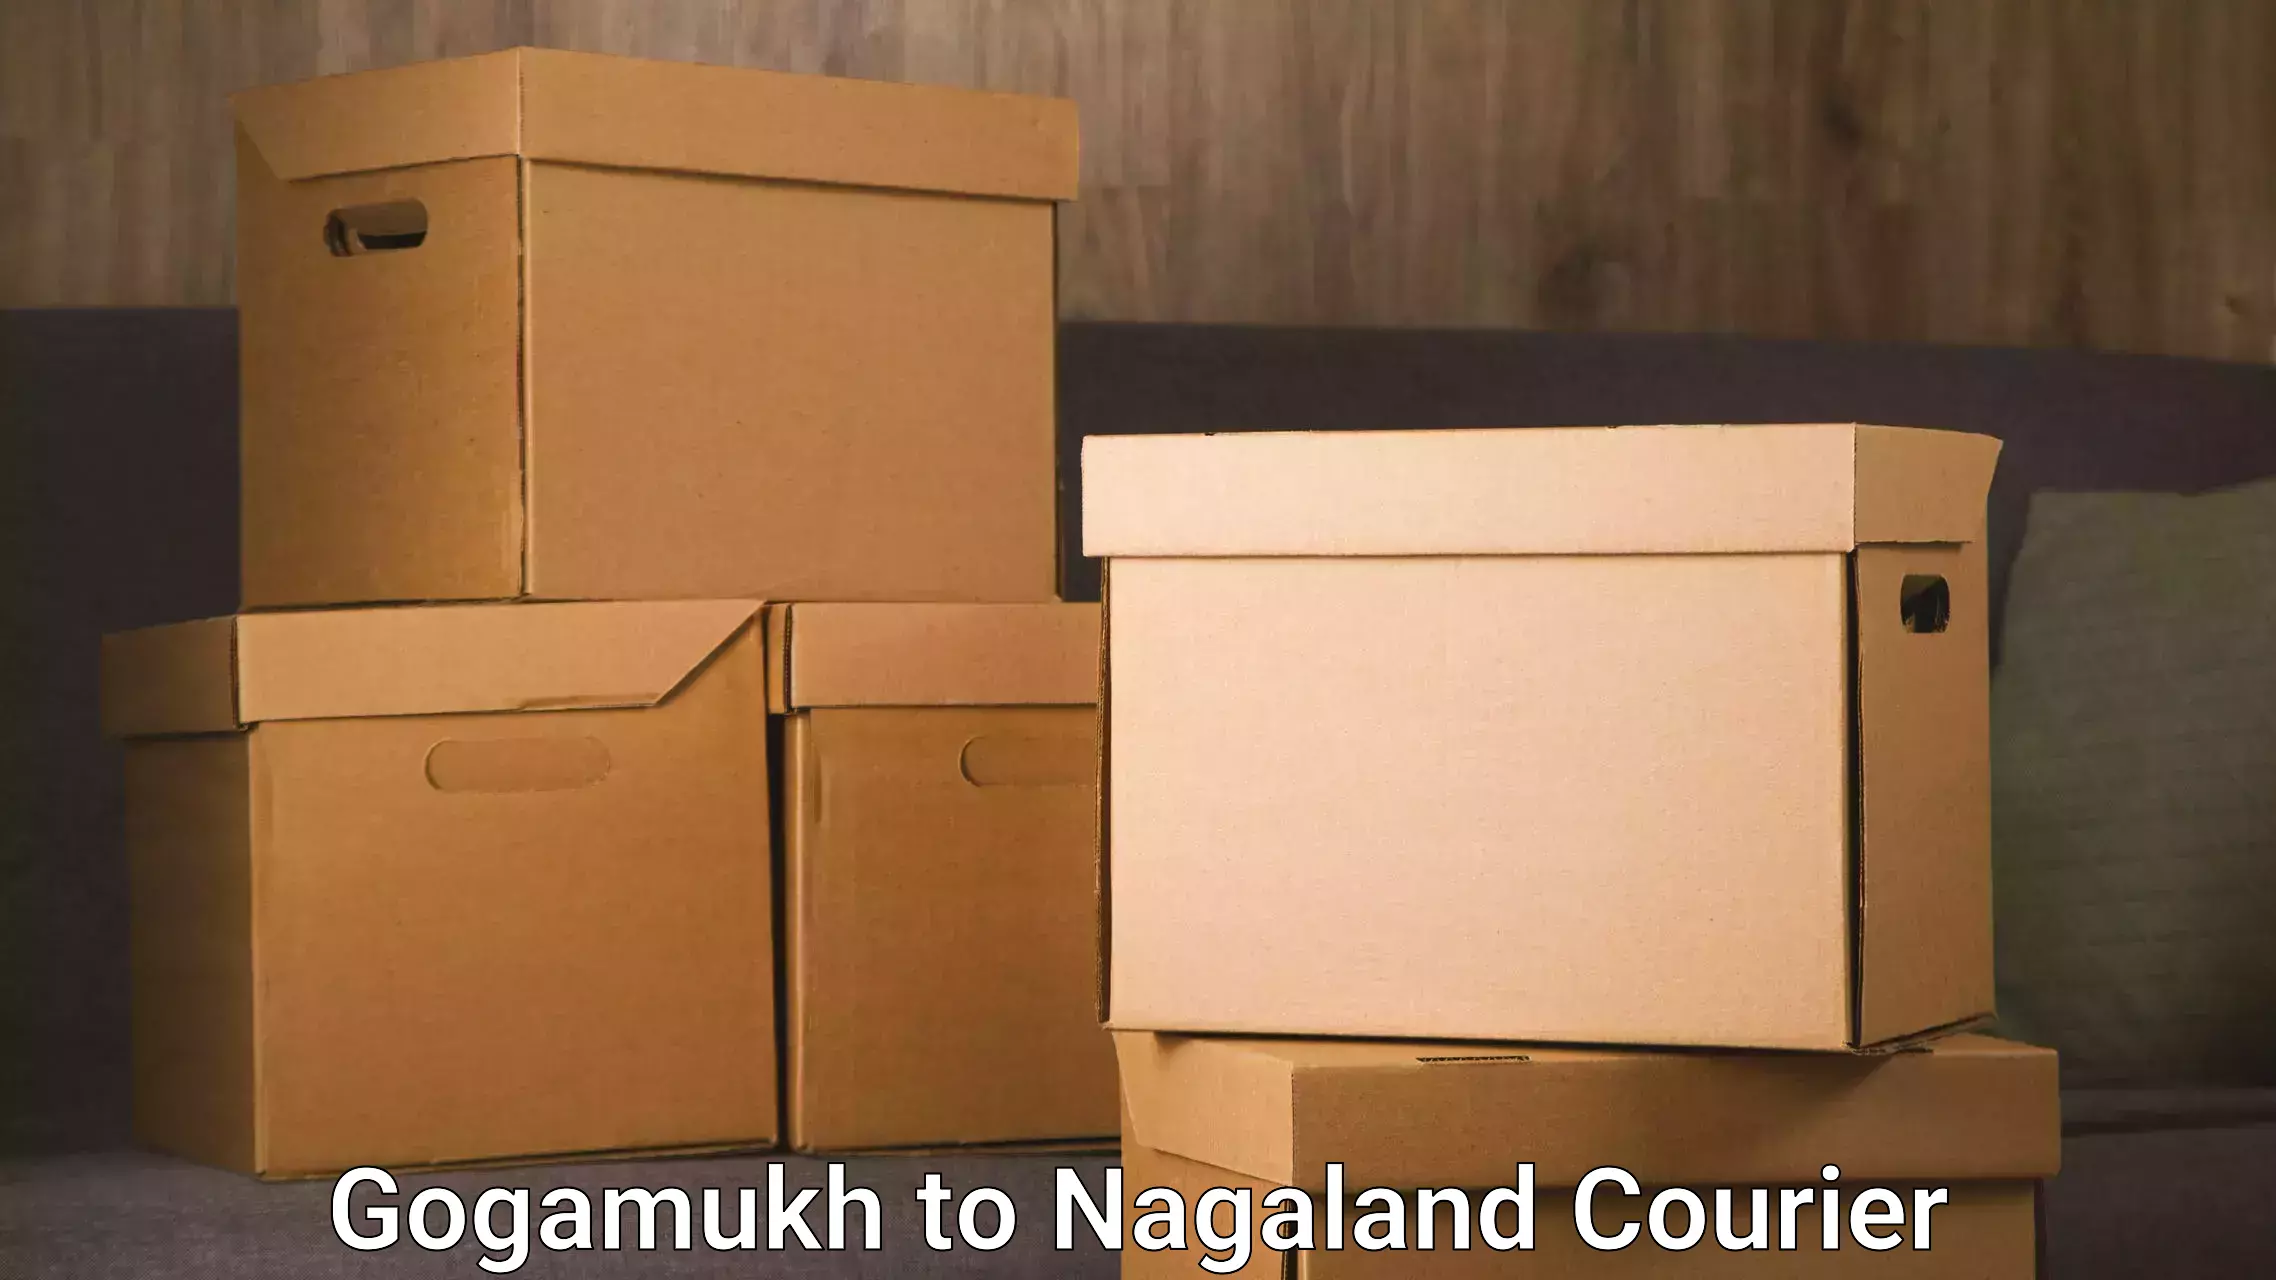 Tracking updates Gogamukh to Nagaland